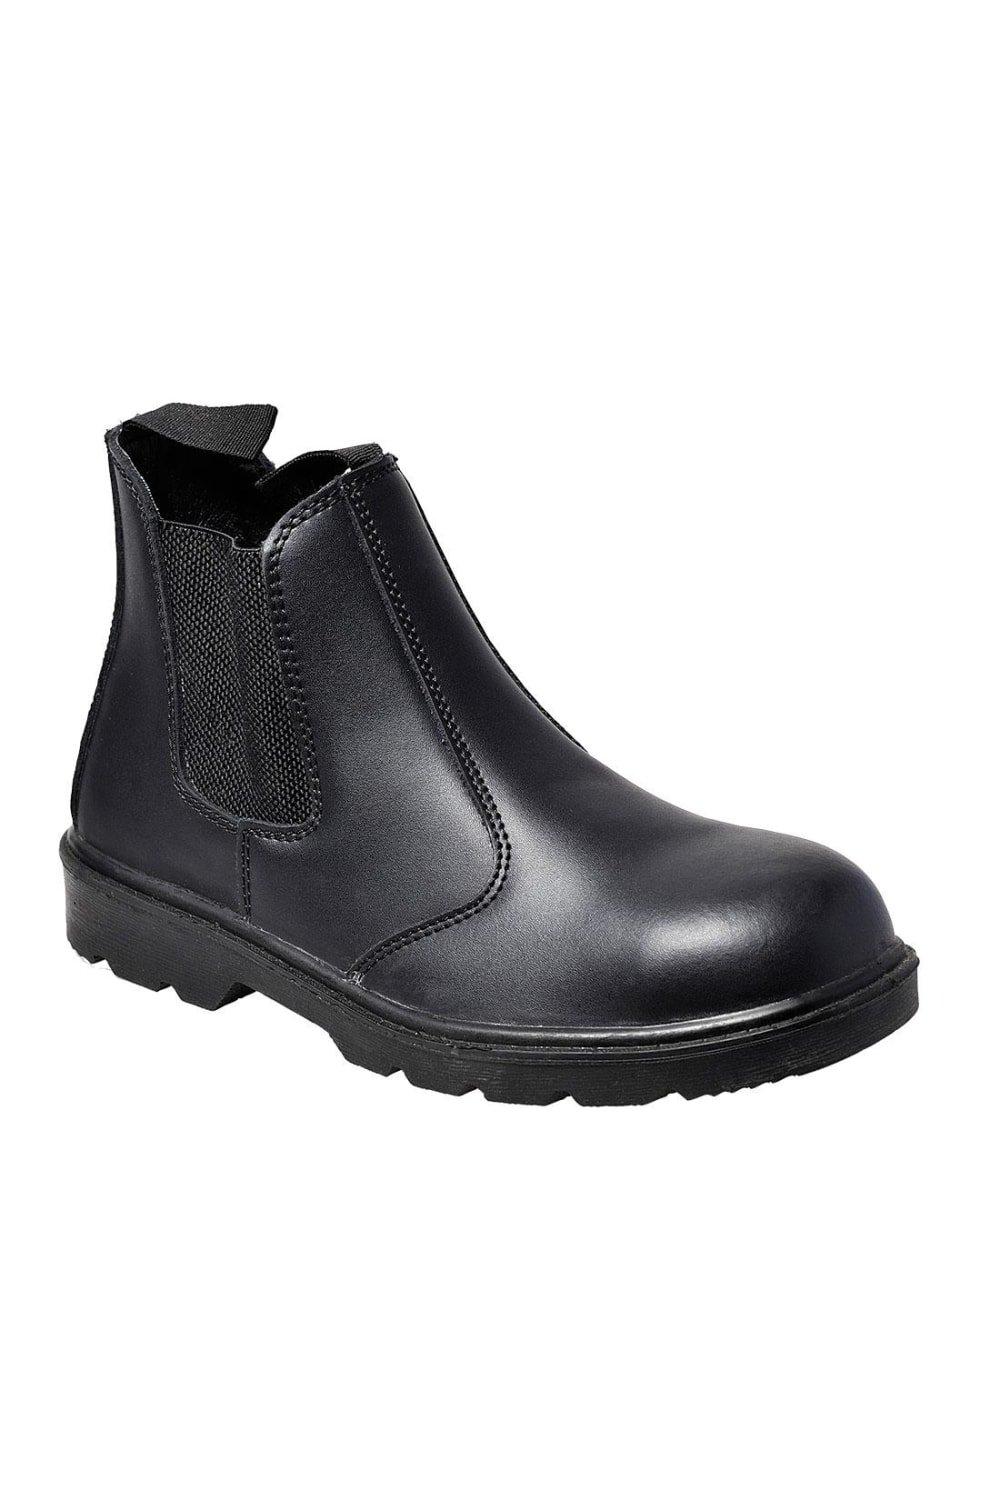 Кожаные защитные ботинки для дилеров Portwest, черный каталог дилеров